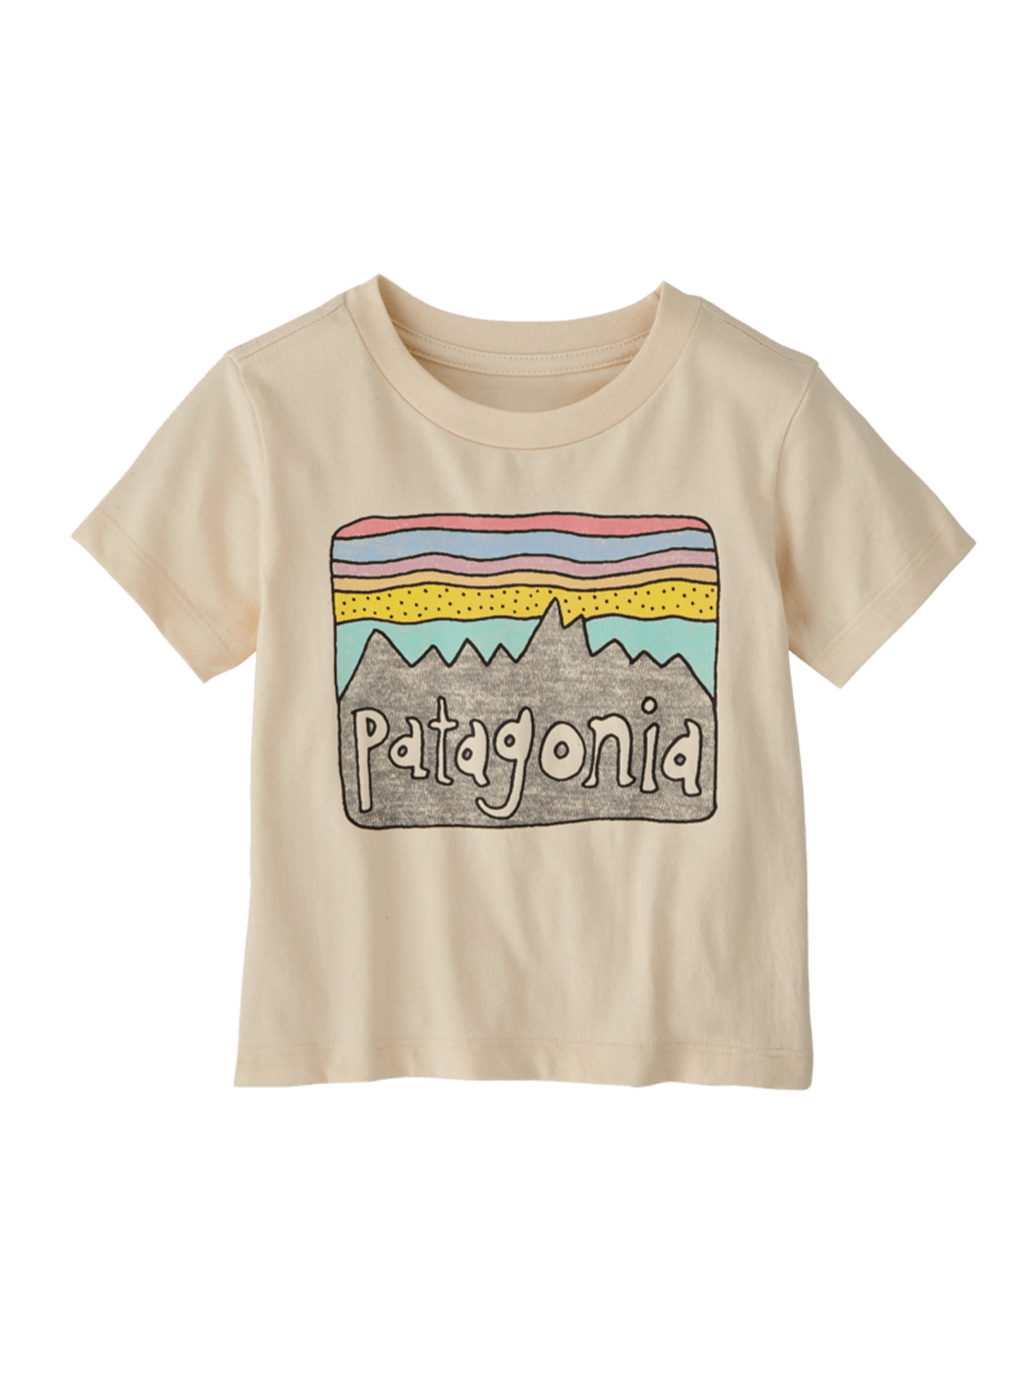 Baby Fitz Roy Skies t-shirt